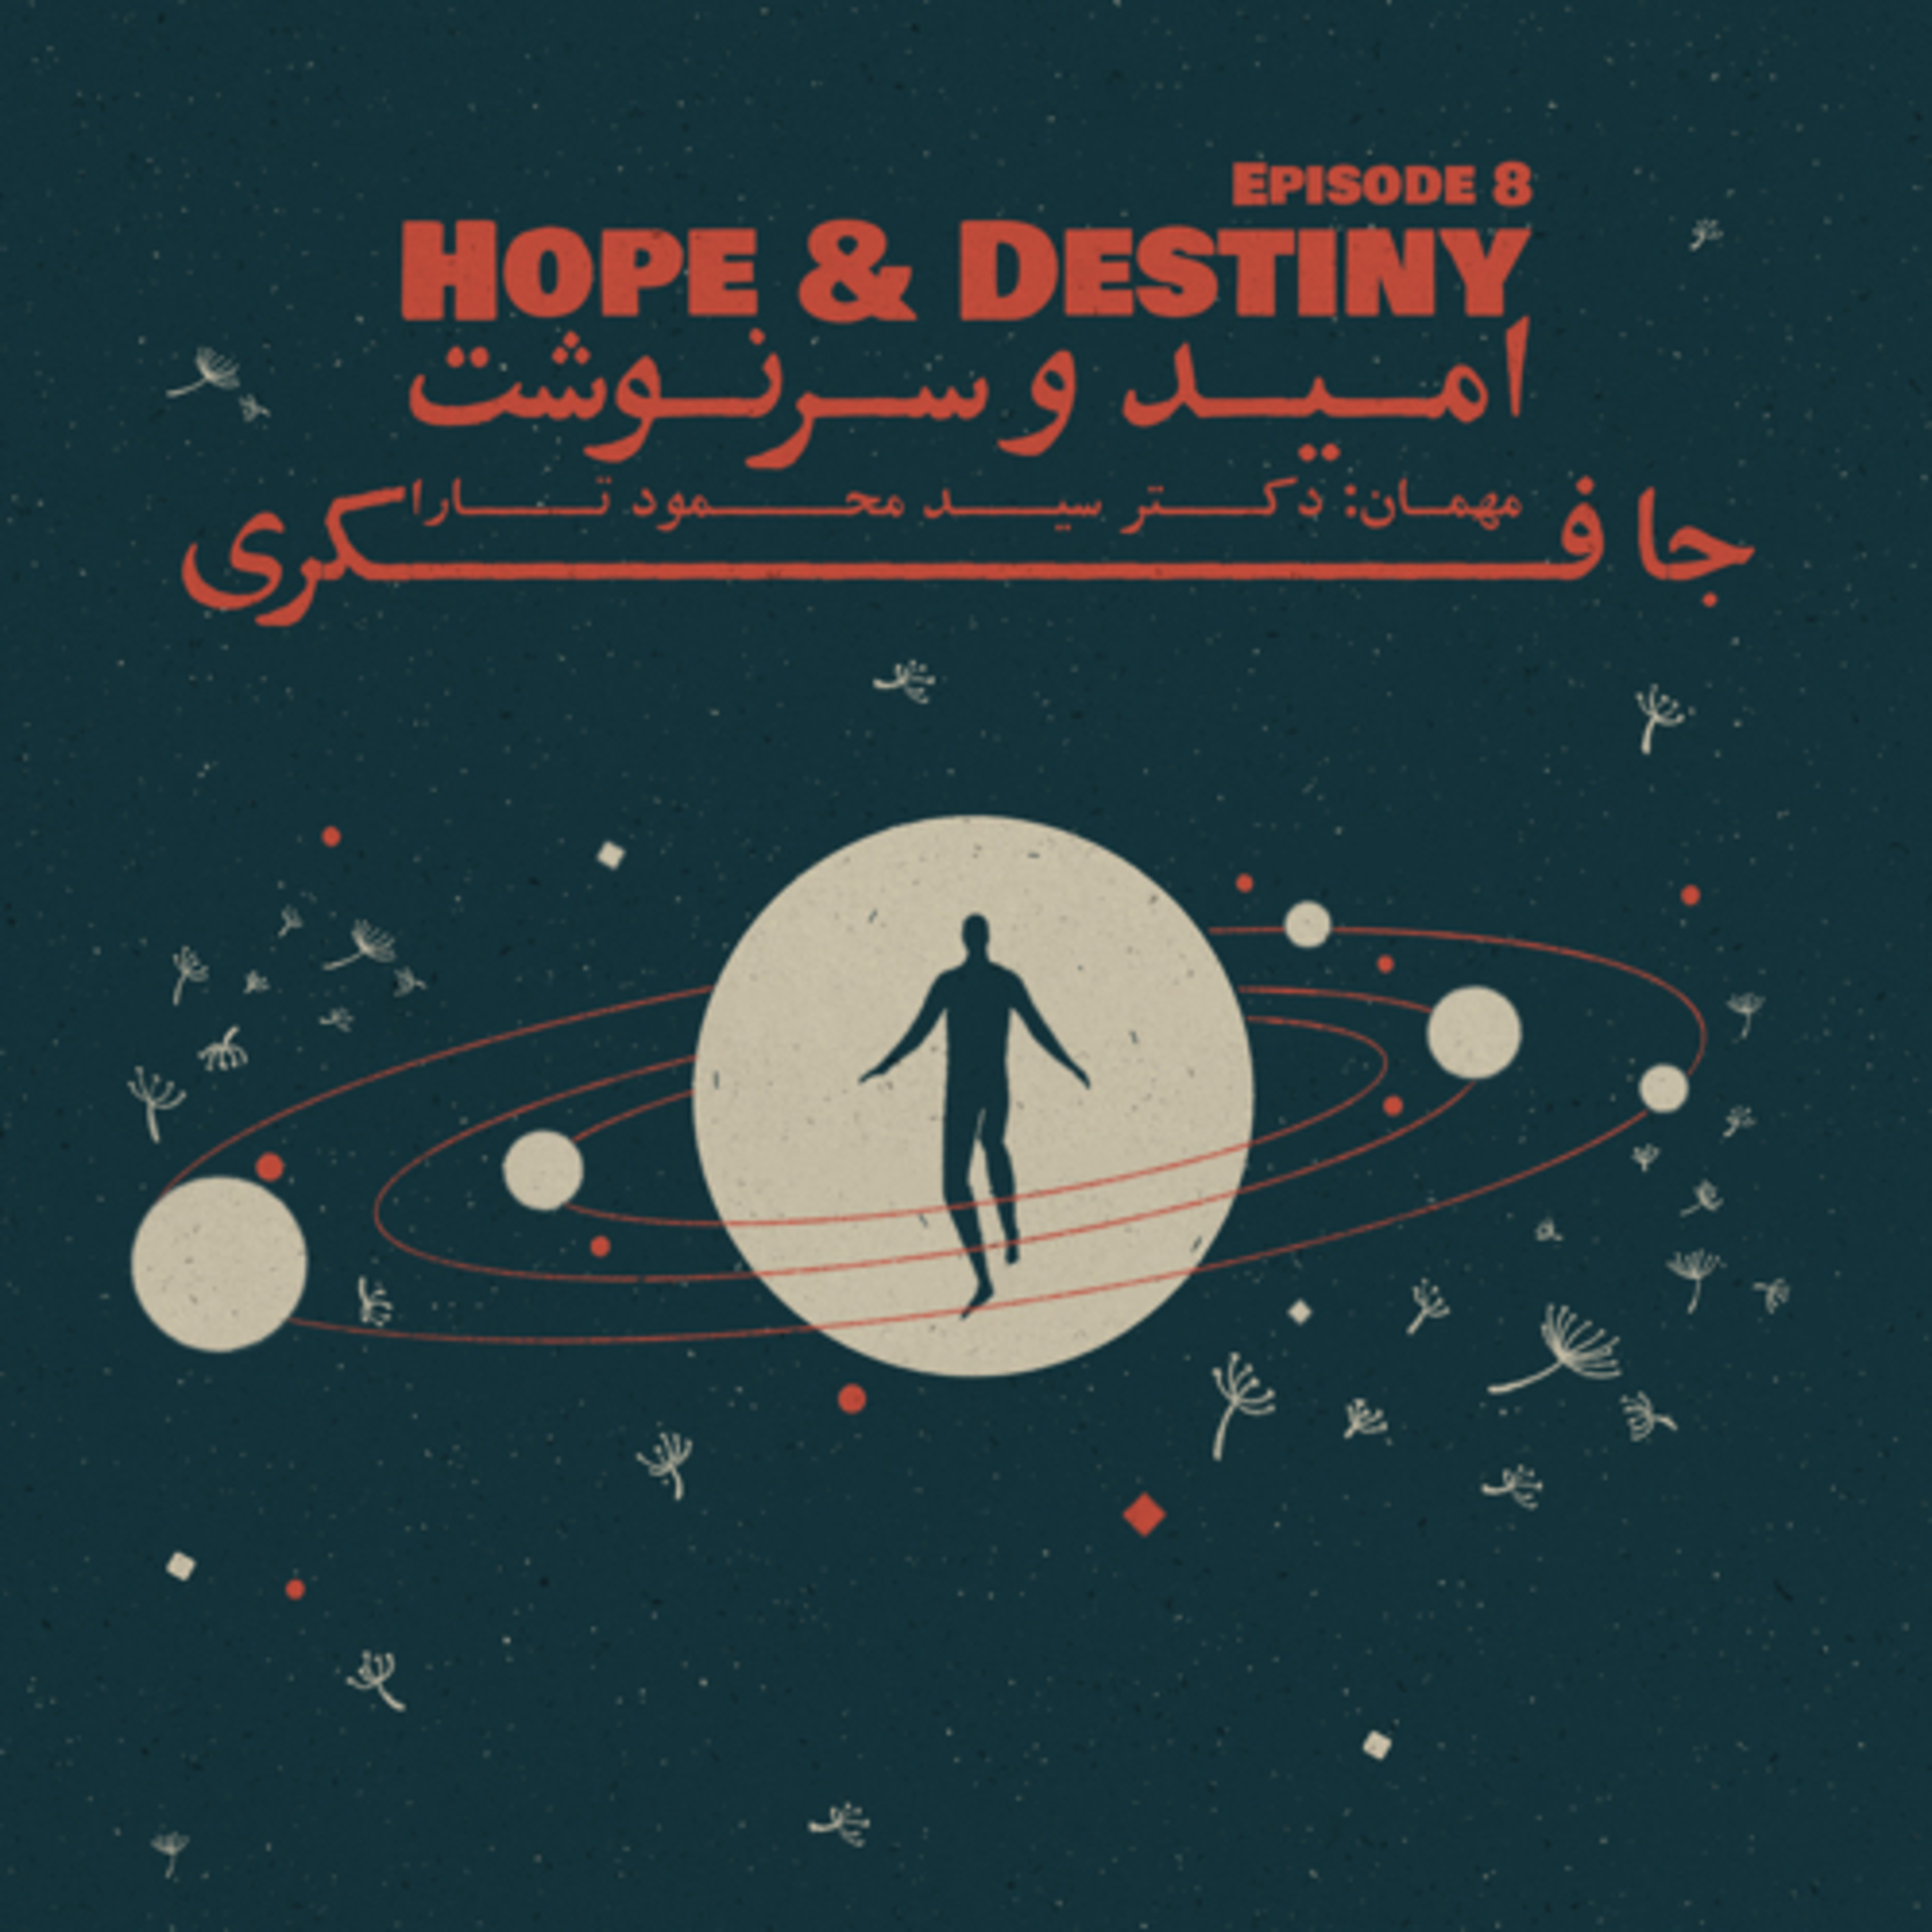 Episode 08 - Hope & Destiny (امید و سرنوشت)